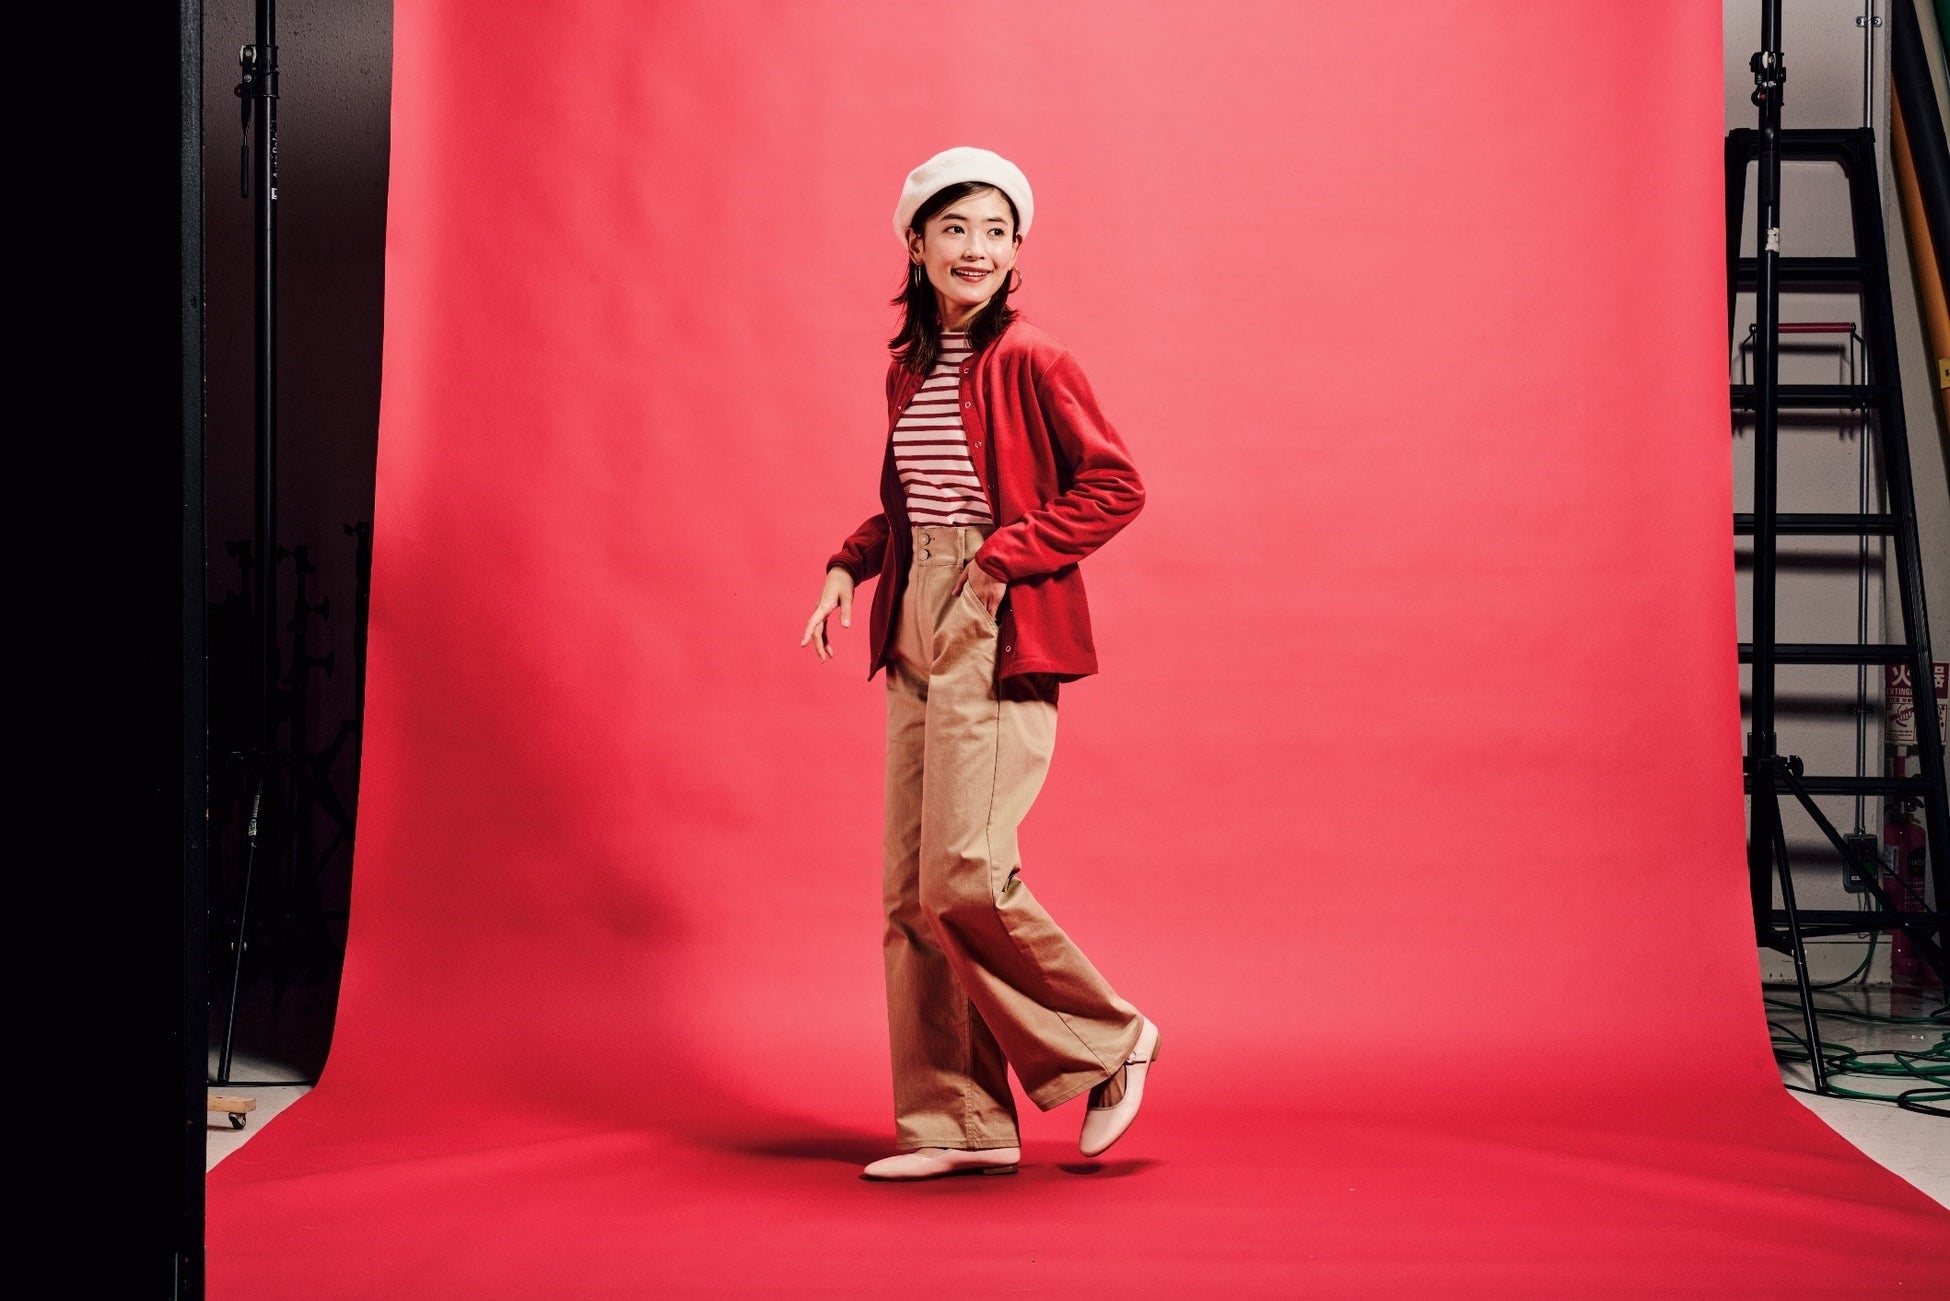 マスコミ、インフルエンサー向けに横浜ビブレ店内覧会を開催「#ワークマン女子」×「WORKMAN Shoes」 ×「ファッション」の新店舗のサブ画像6